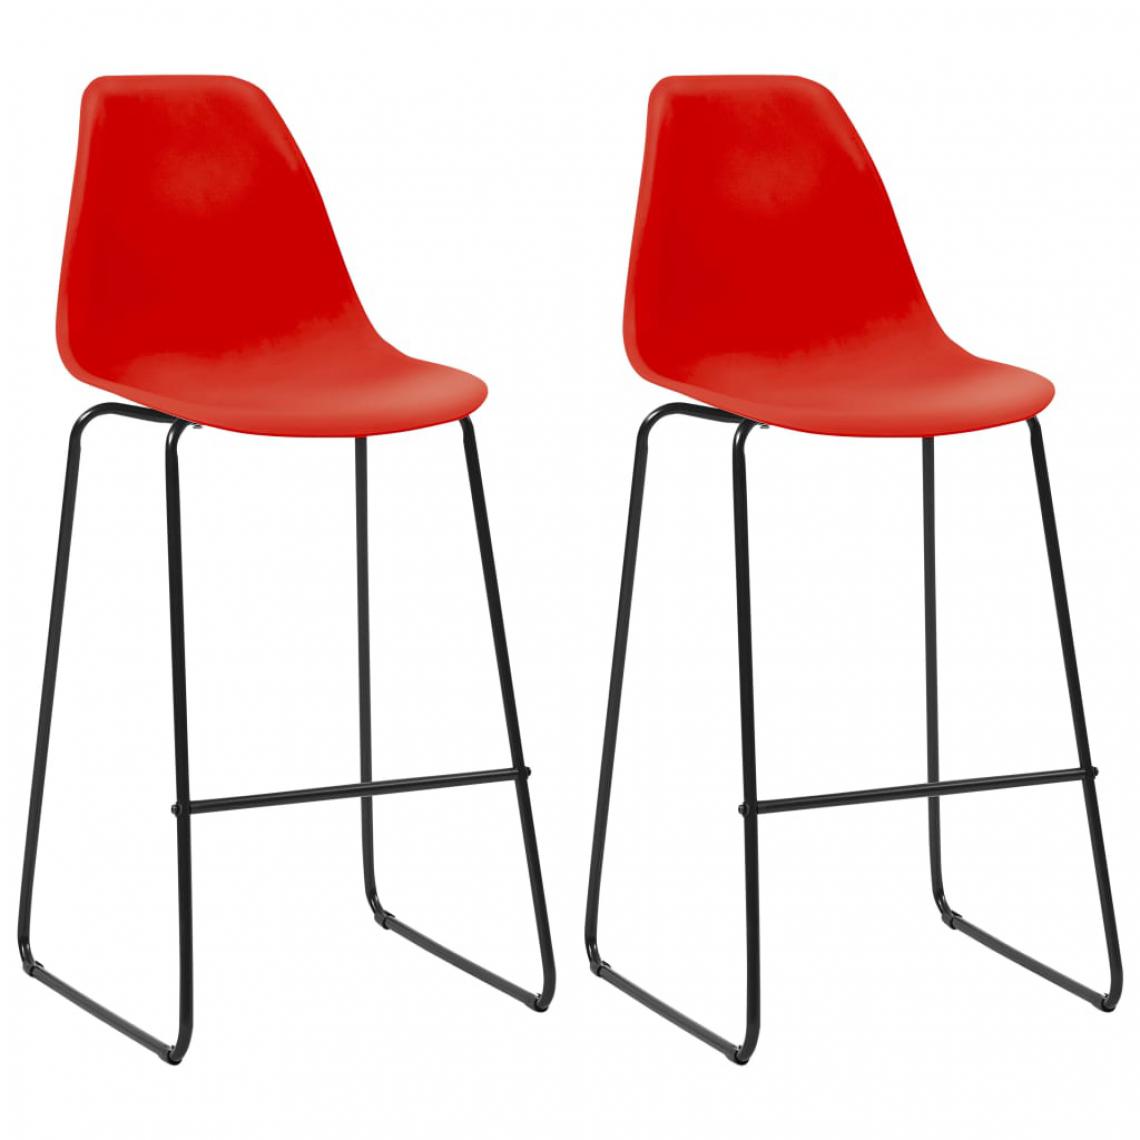 Icaverne - Admirable Fauteuils et chaises famille Malabo Chaises de bar 2 pcs Rouge Plastique - Tabourets